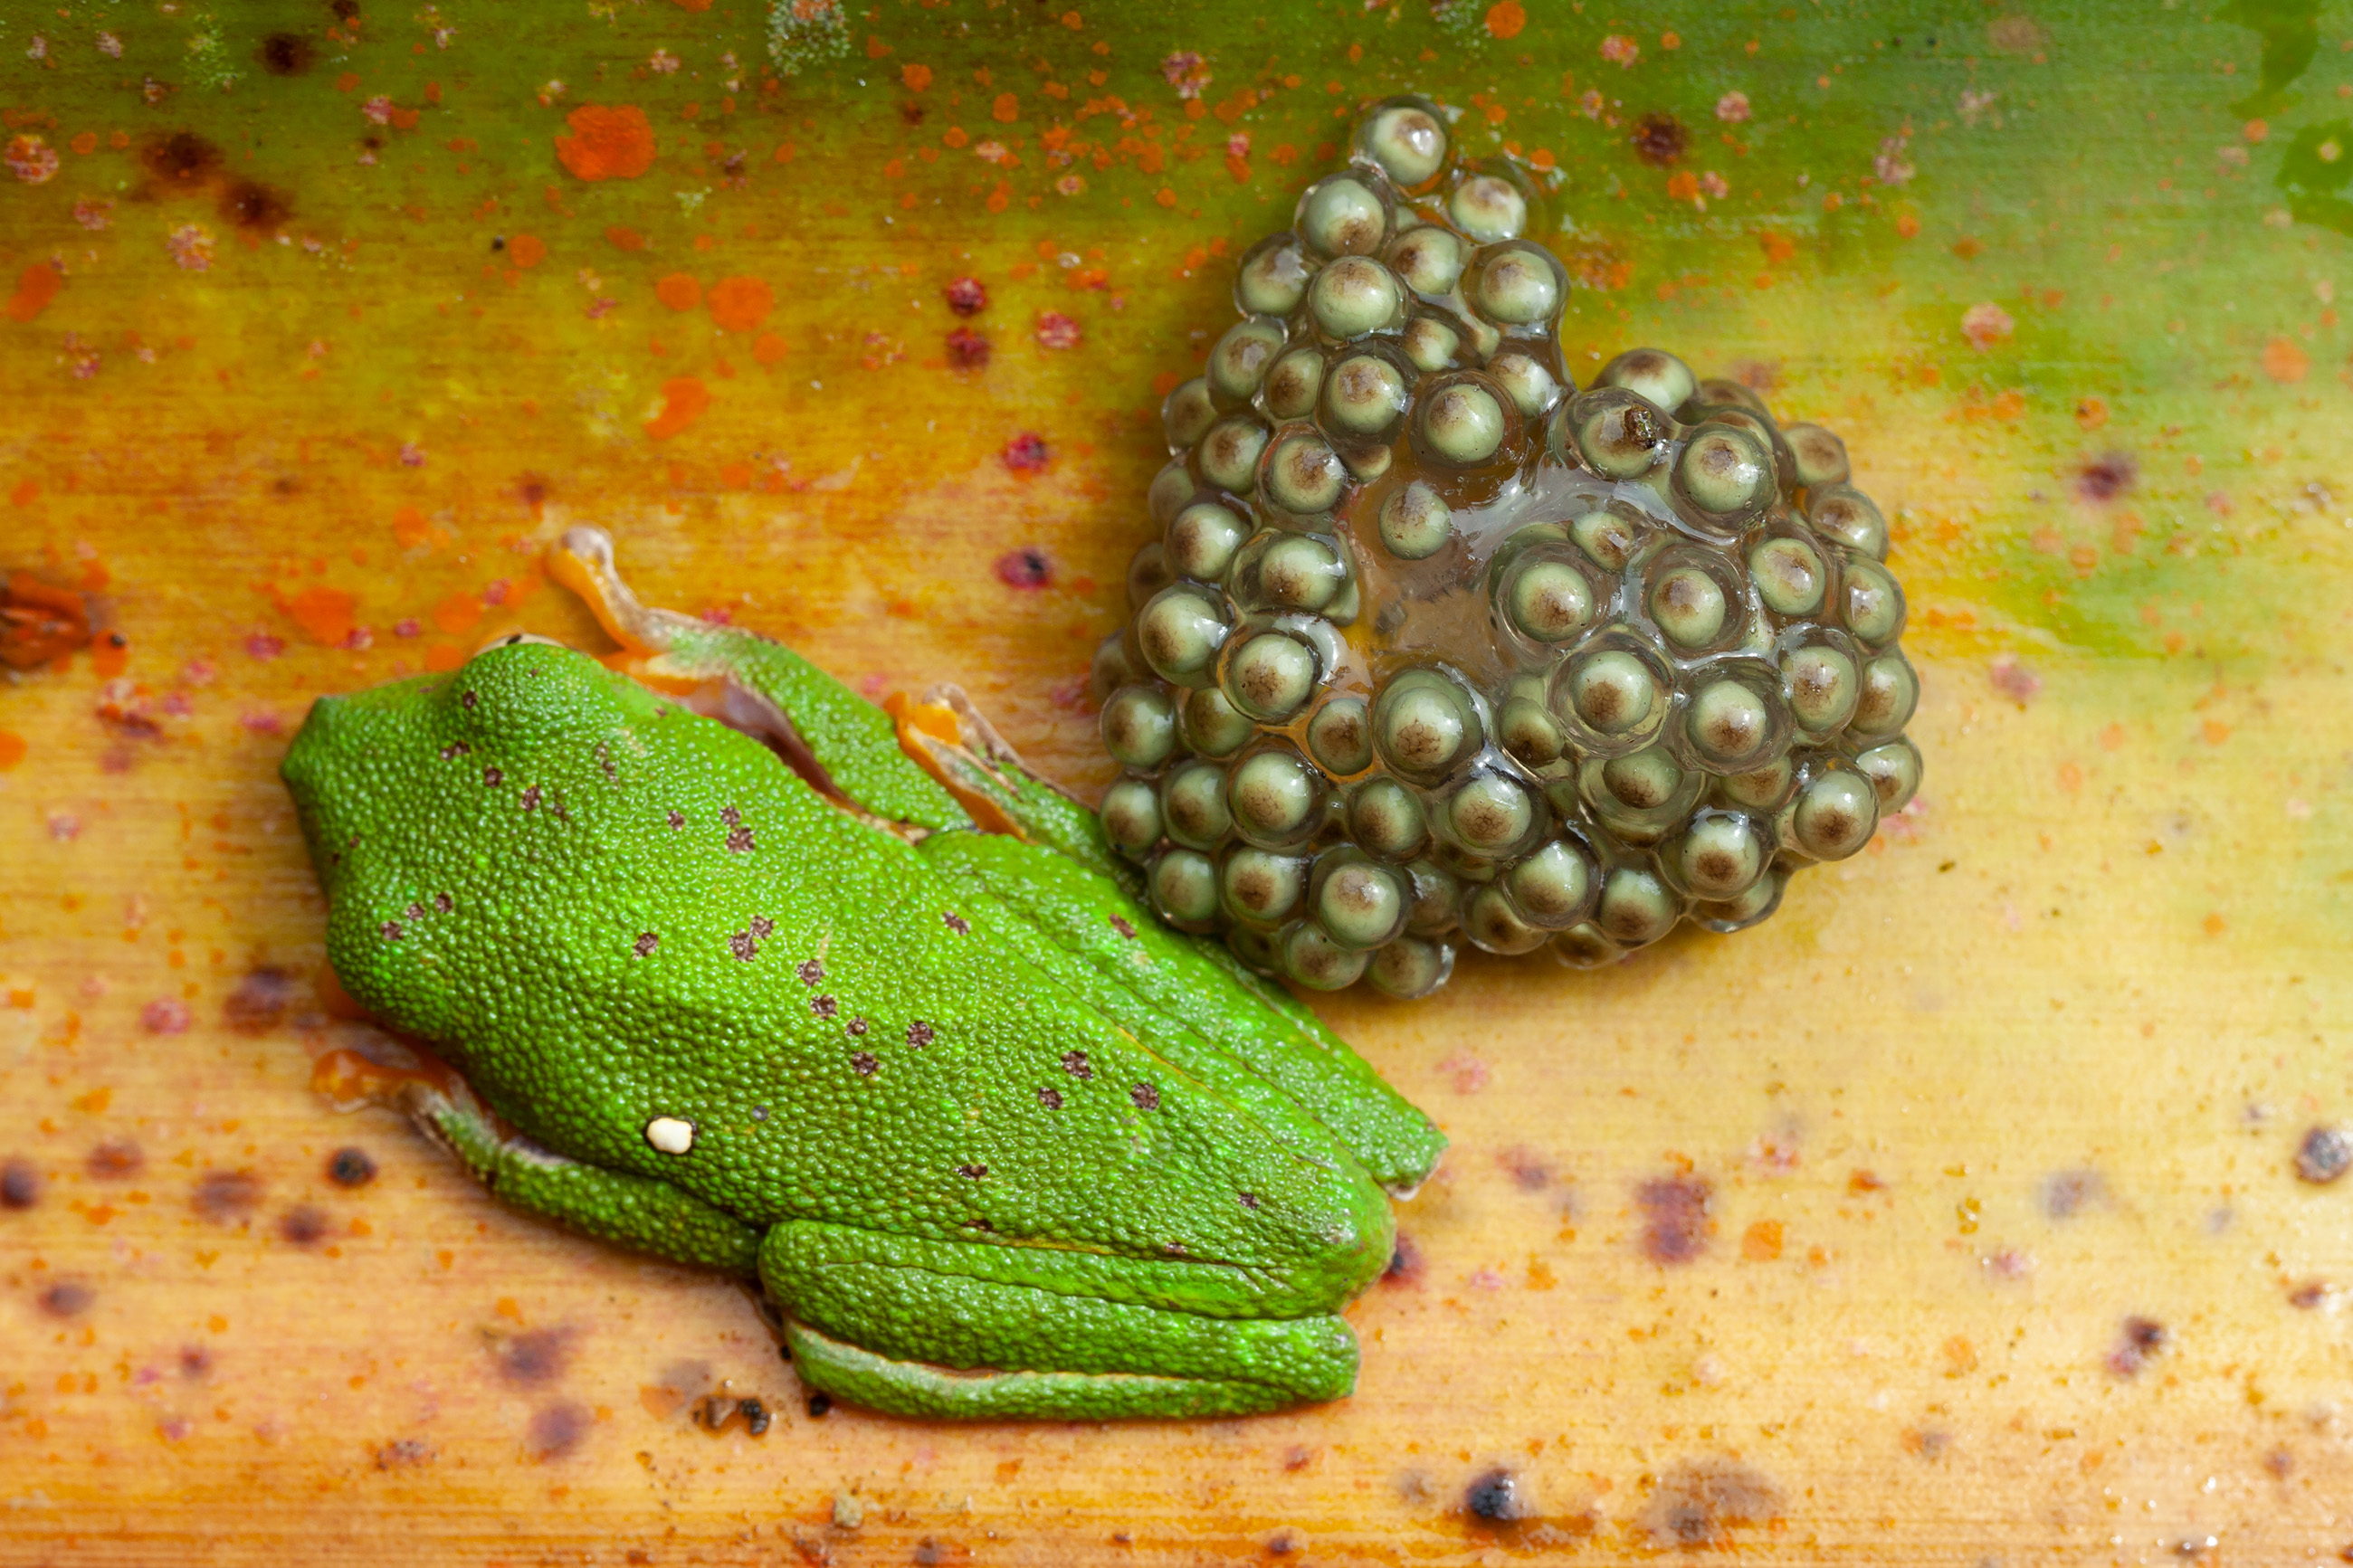 Amazon leaf frog (Agalychnis hulli)